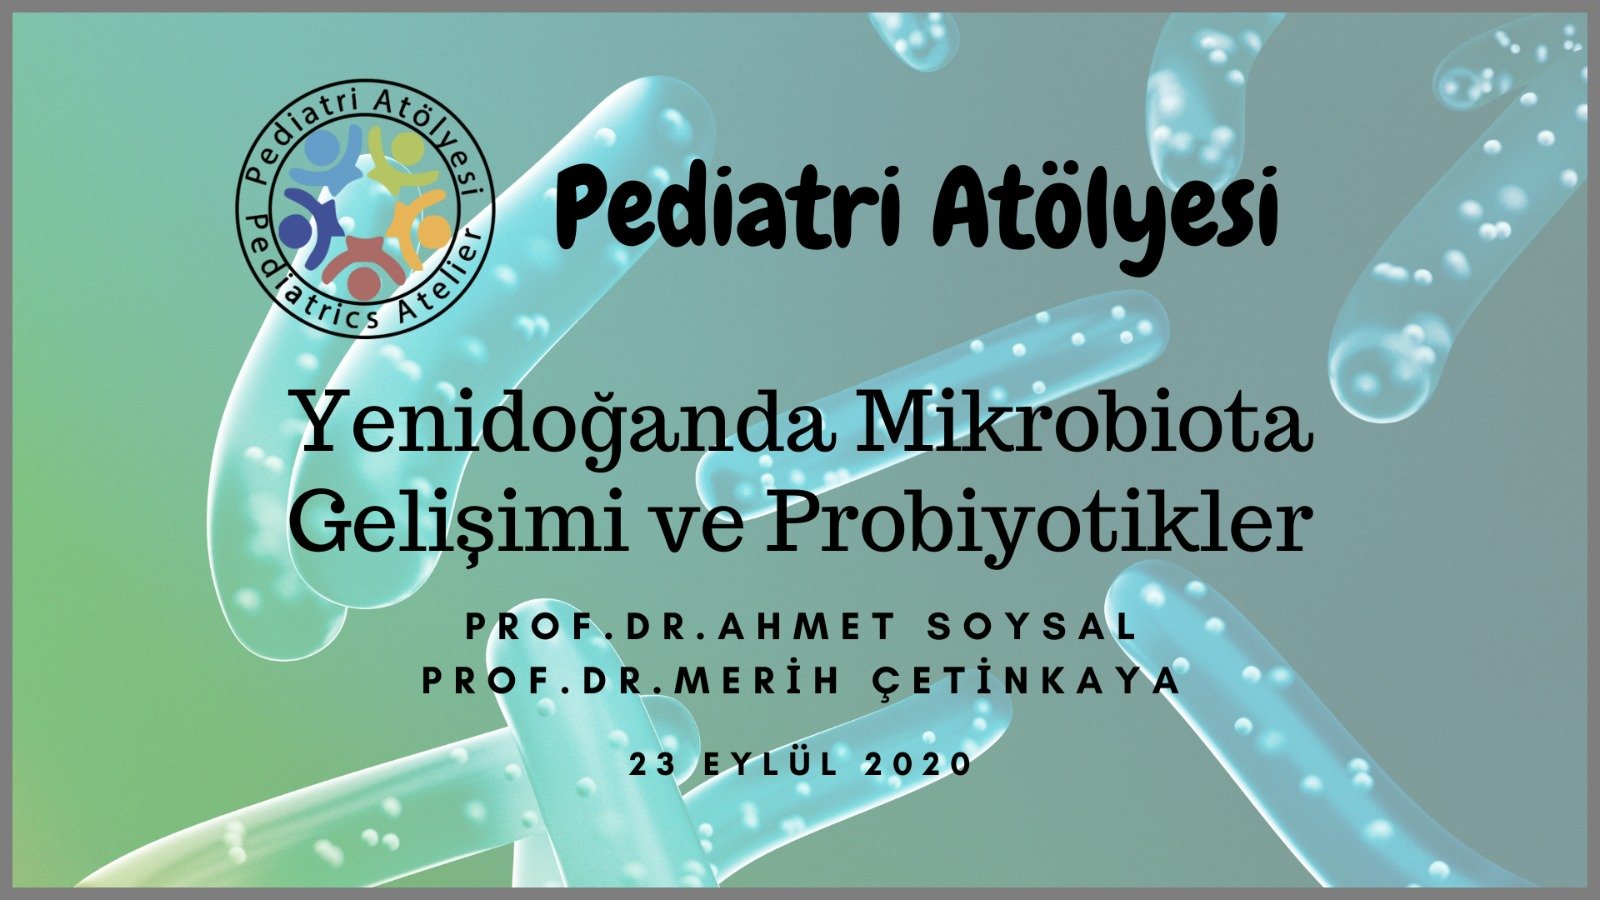 Yenidoğanda Mikrobiota Gelişimi ve Probiyotikler